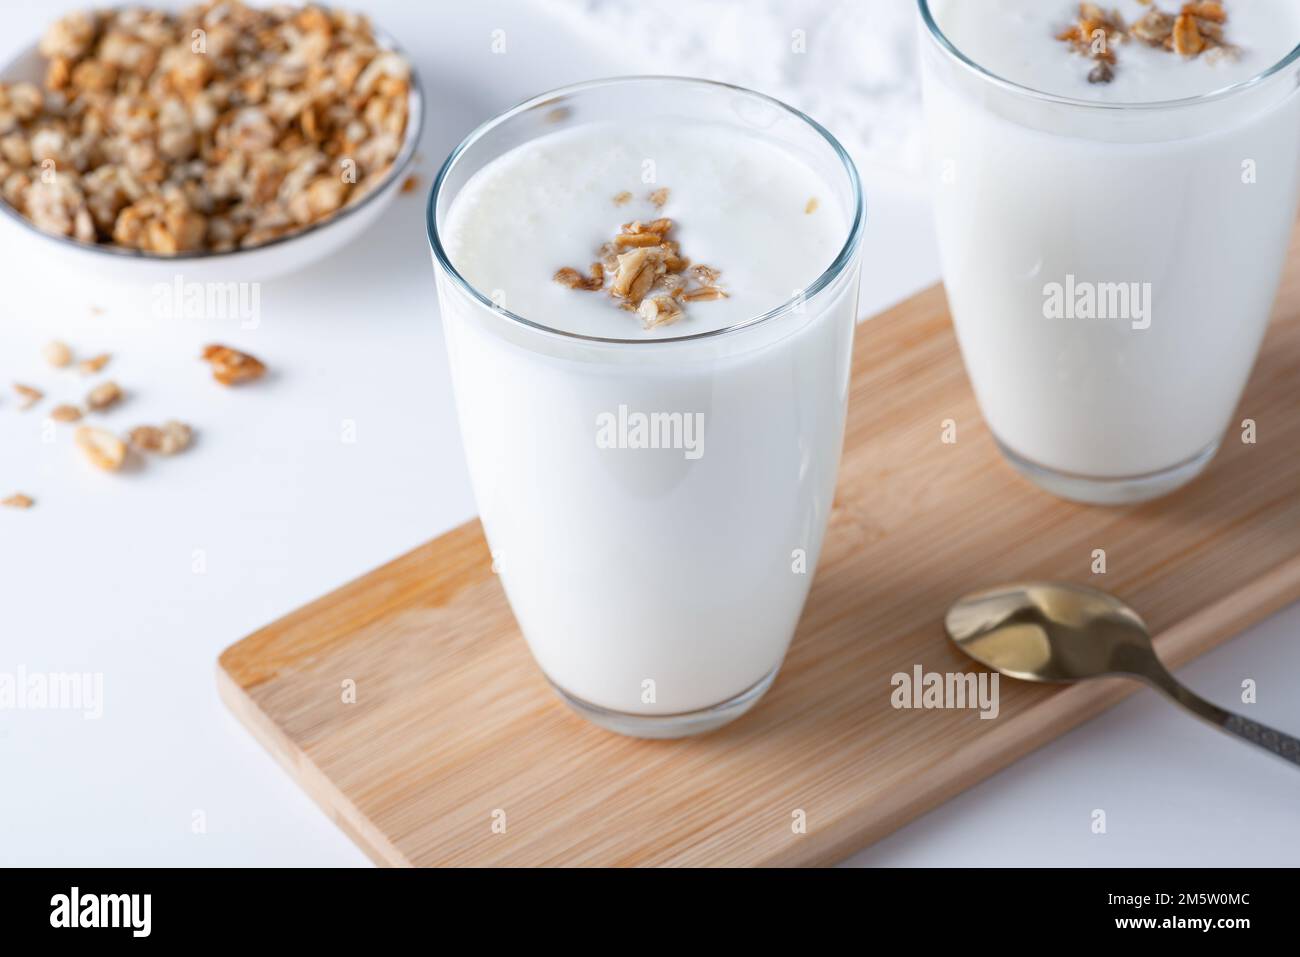 Kefir, latticello o yogurt al granola. Bevanda a base di latticini fermentata fredda probiotica. Foto Stock